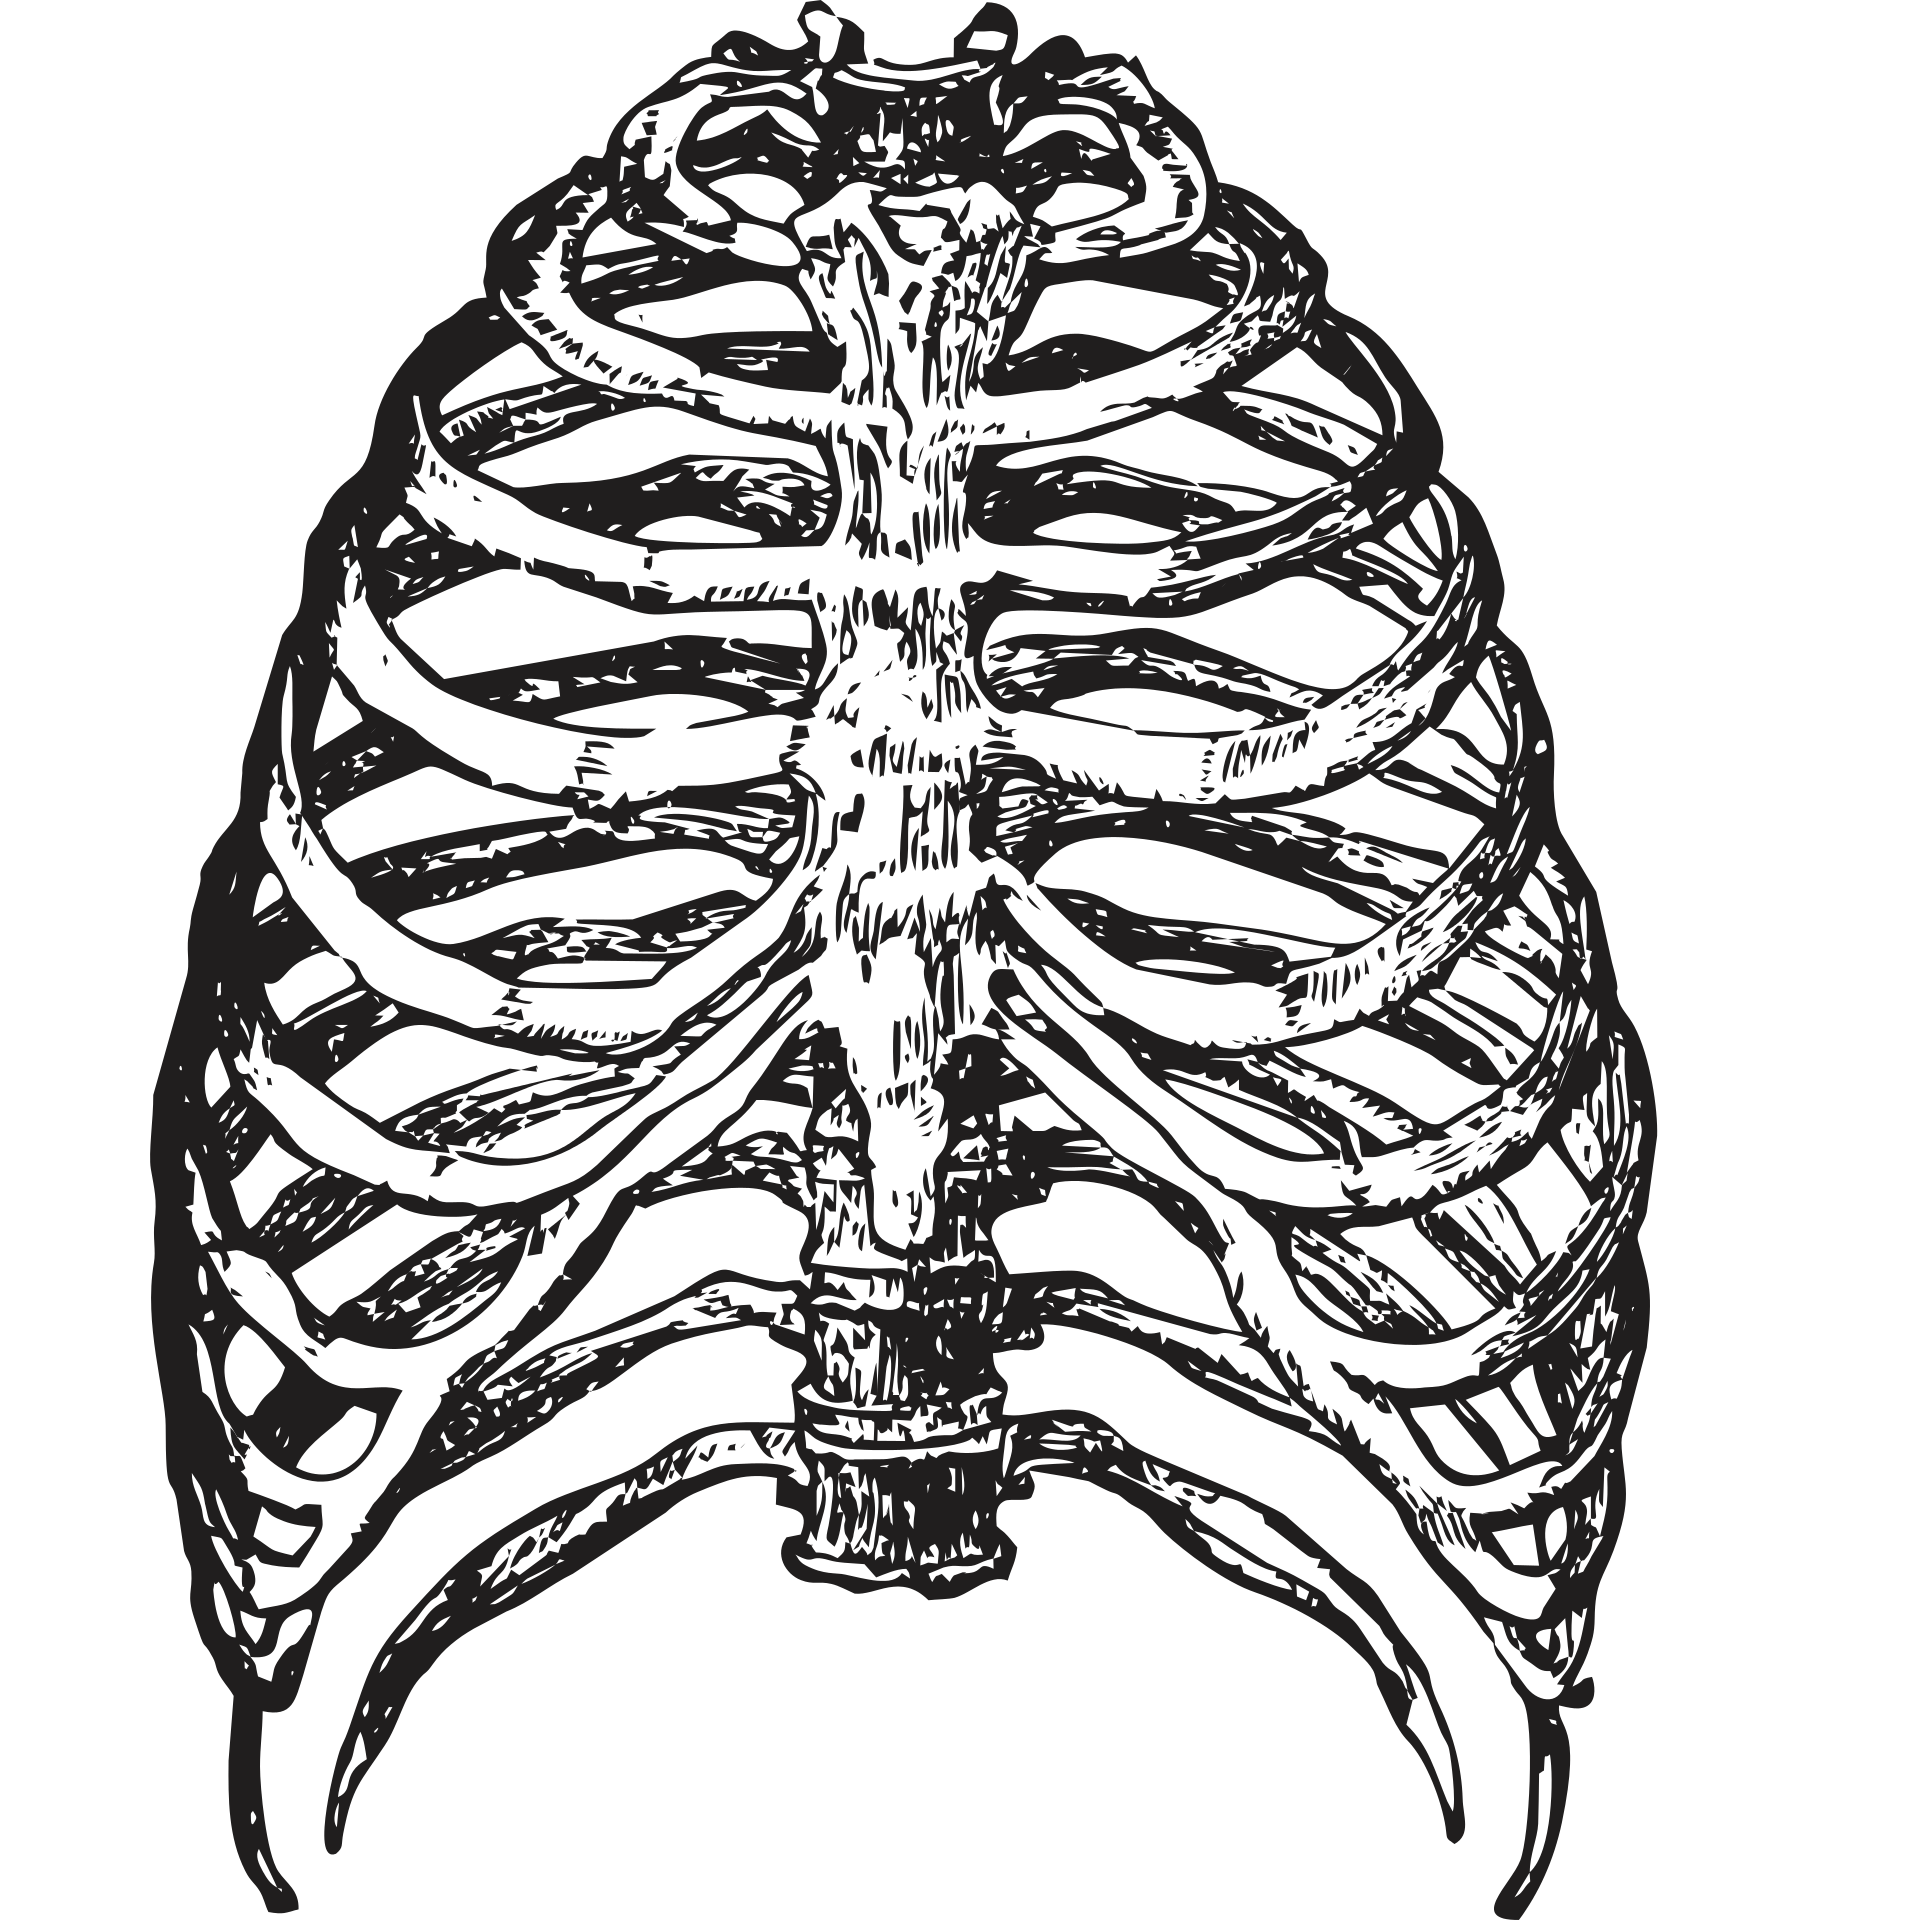 Показать ребра человека. Грудная клетка с ребрами и грудиной. Кости рёбер с грудиной. Скелет грудной клетки ребра. Скелет человека грудная клетка ребра.